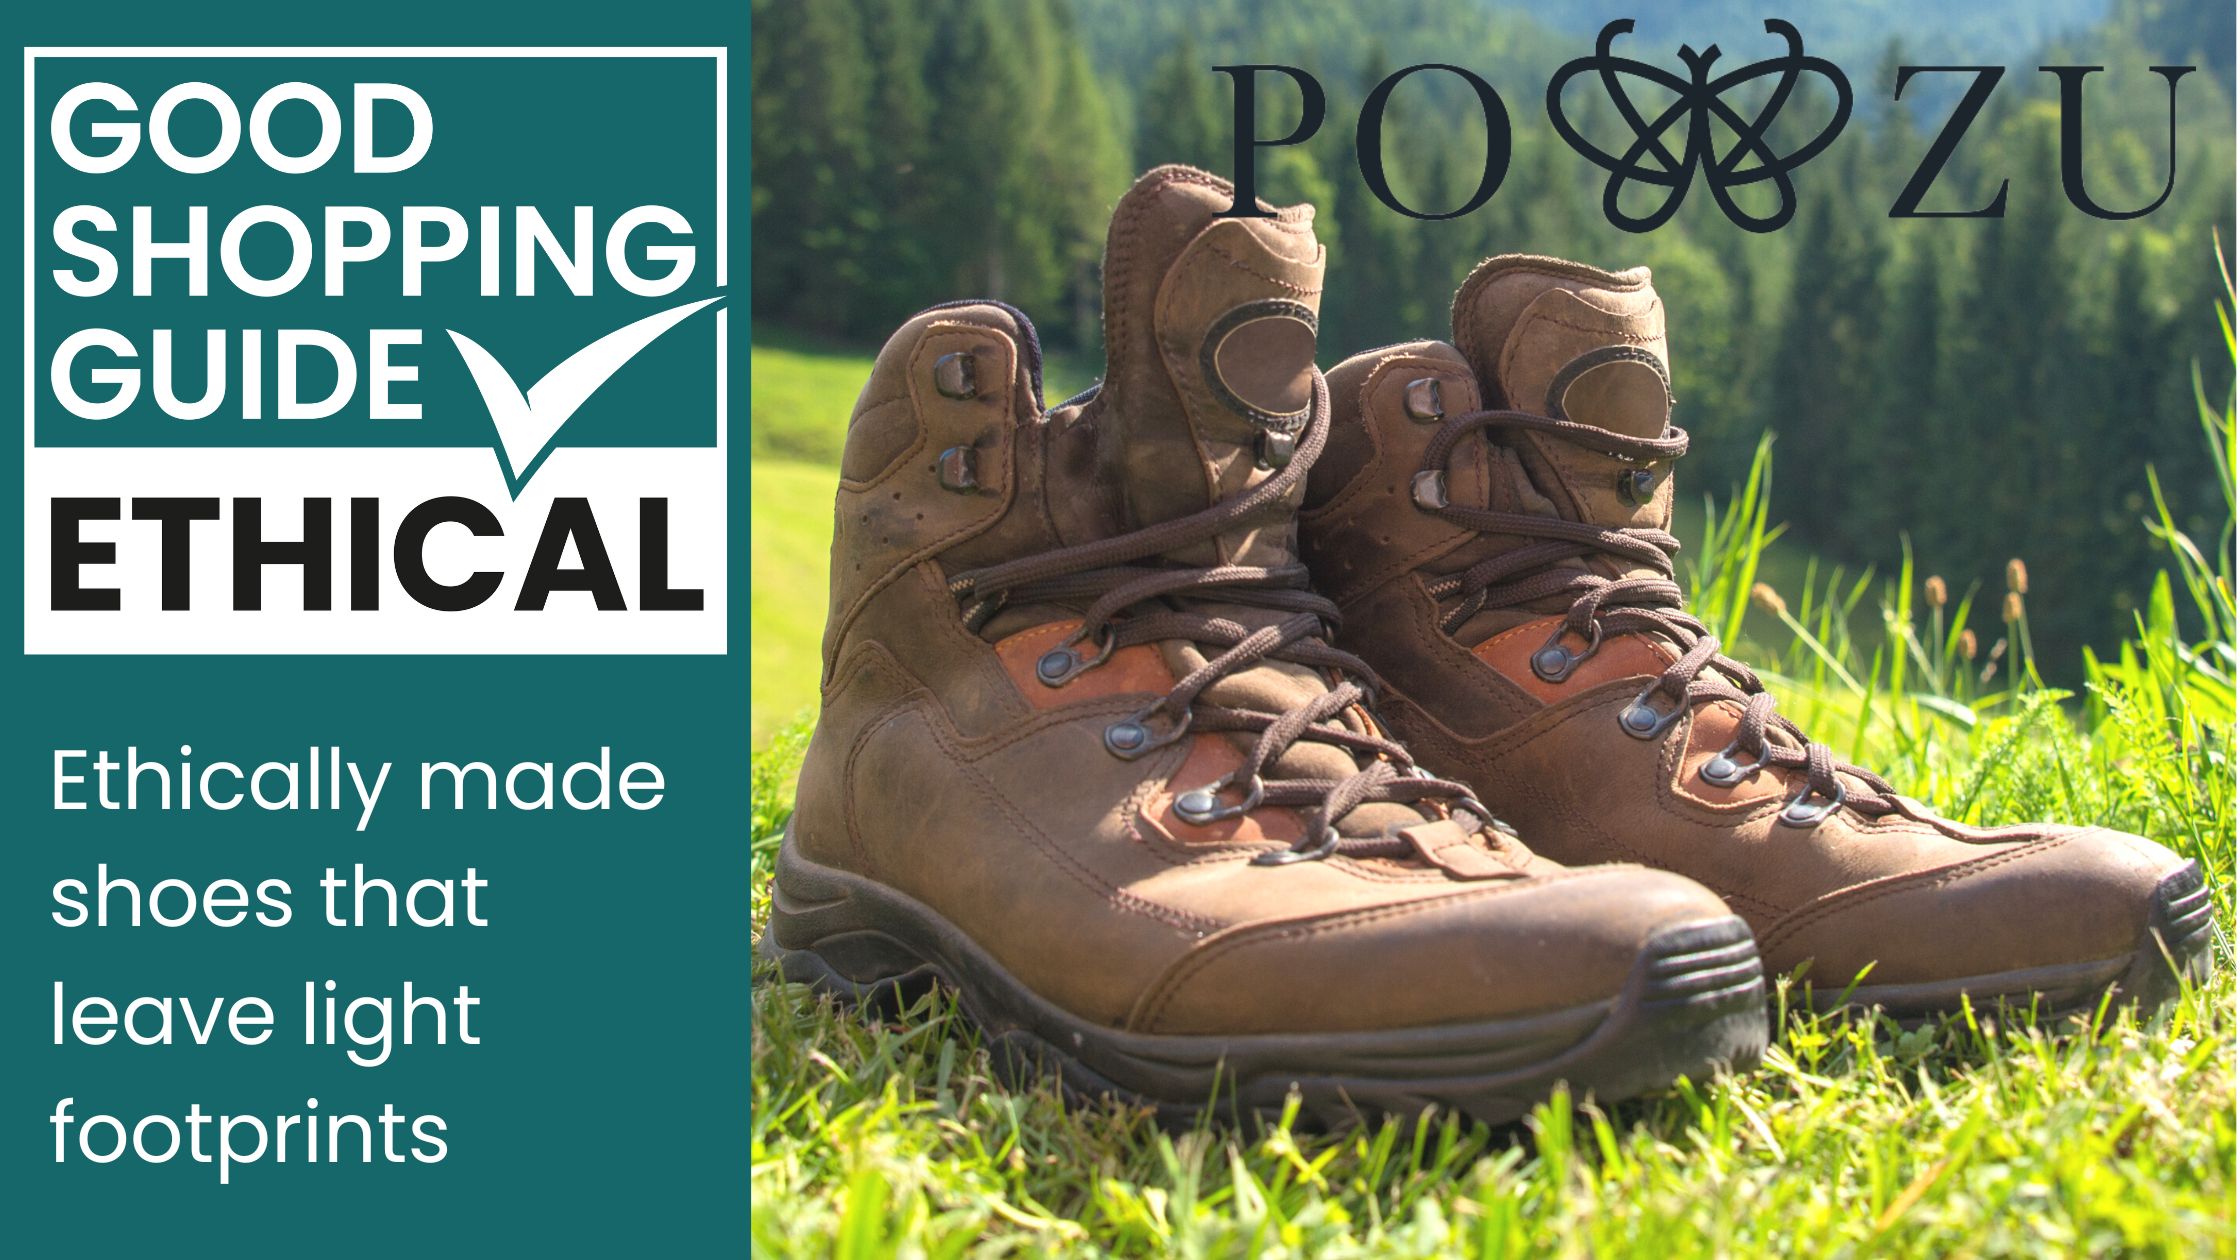 po-zu blog banner- hiking boots on grass